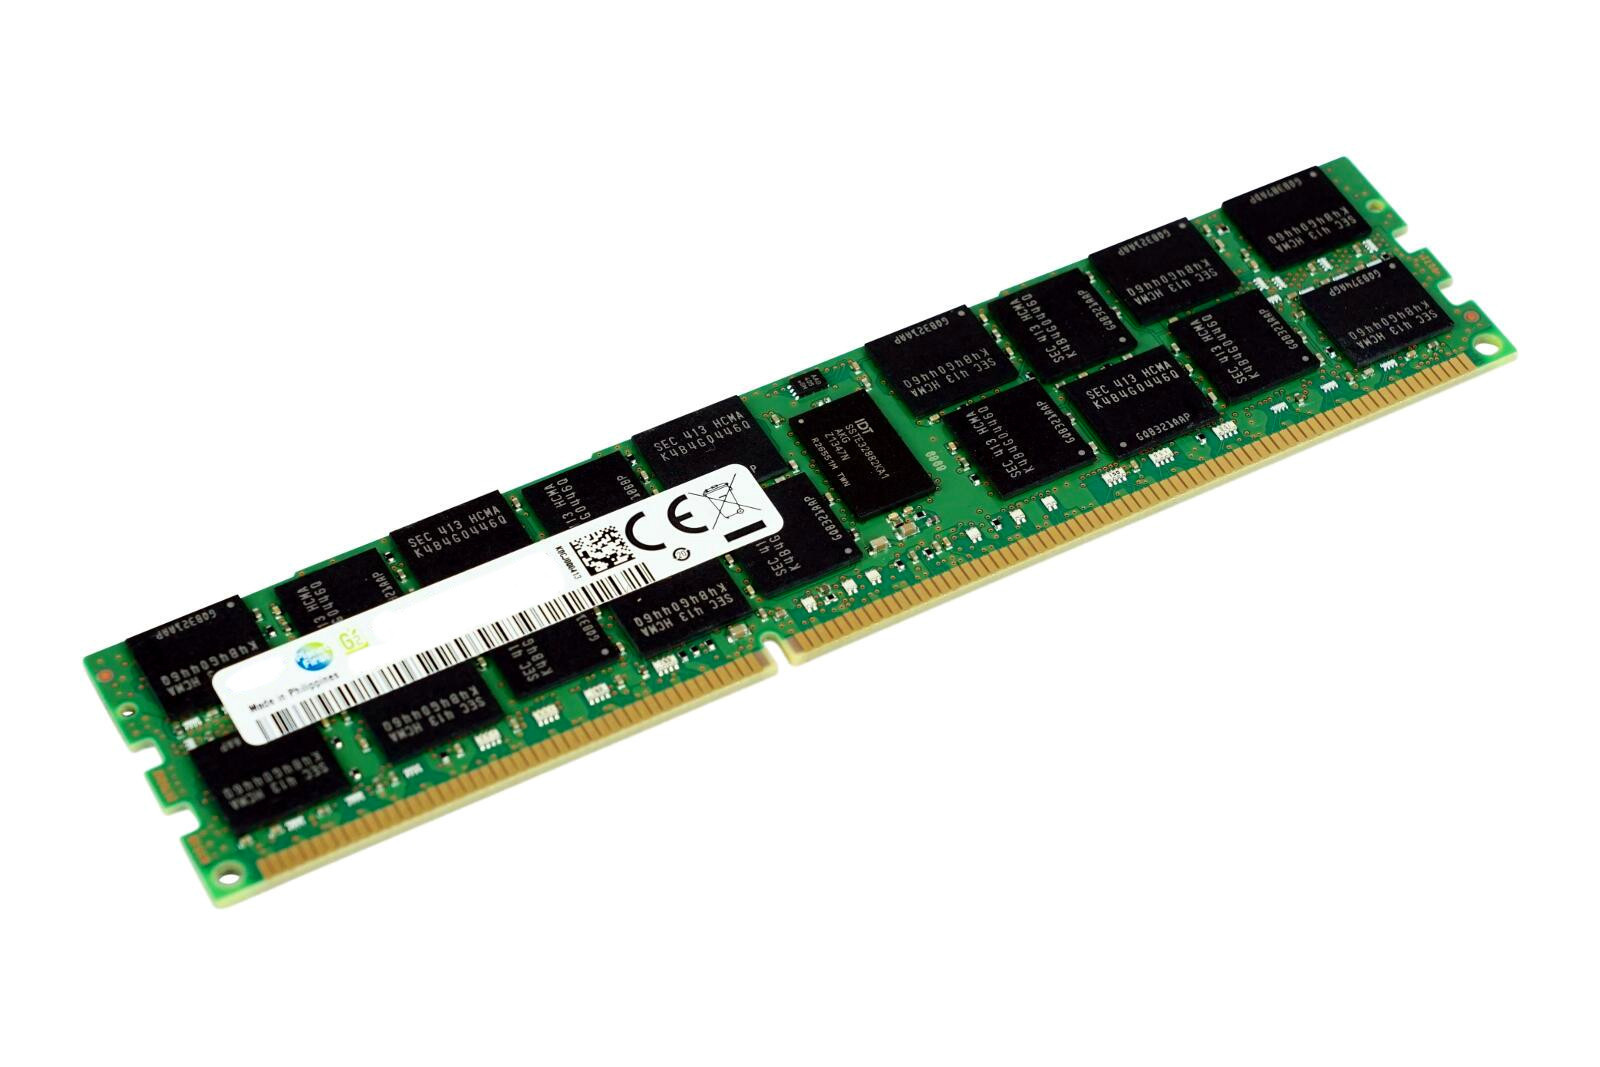 OFFTEK 512MB Replacement RAM Memory for Fujitsu-Siemens FMV K620 PC3200 - Non-ECC Desktop Memory